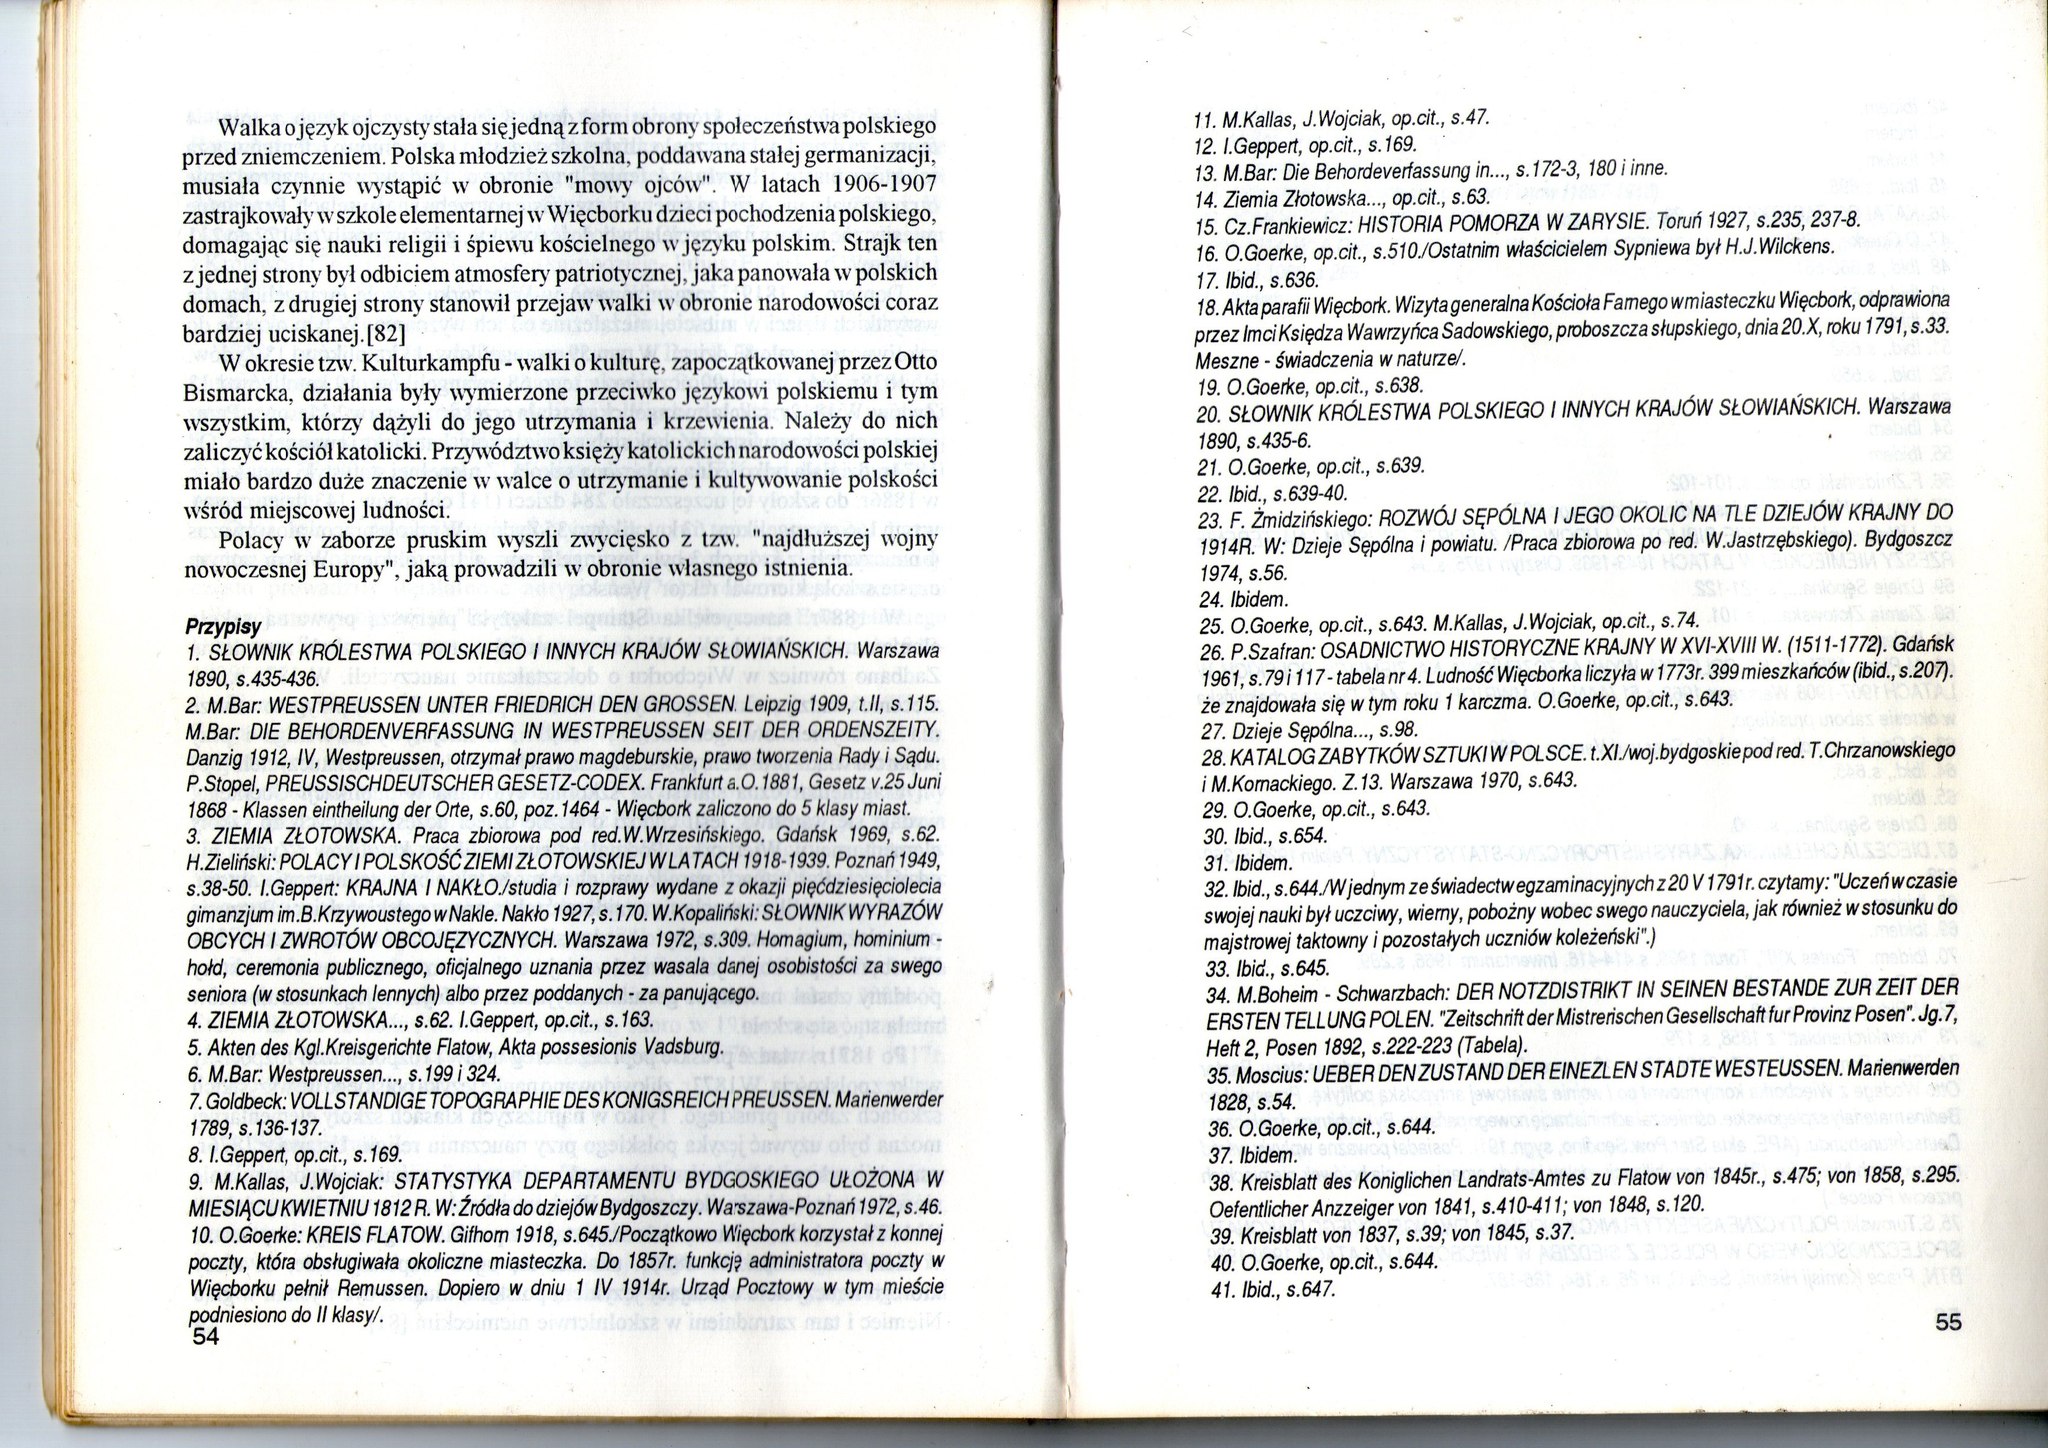  Tym kłamstwom burmistrza i Marszałka w liście do gminy Więcbork zaprzecza wydany 30 lat temu w 1993 r. przez Urząd Miejski Więcborka SZKIC MONOGRAFII MIASTA WIĘCBORK w dziale II WIĘCBORK POD ZABOREM PRUSKIM STRONA 32 z załączonym źródłem informacji w przypisie 9 na stronie 54, który państwu załączam żądając sprostowania kłamstw burmistrza Więcborka i Marszałka województwa kujawsko - pomorskiego - Tomasz Roman Bracka